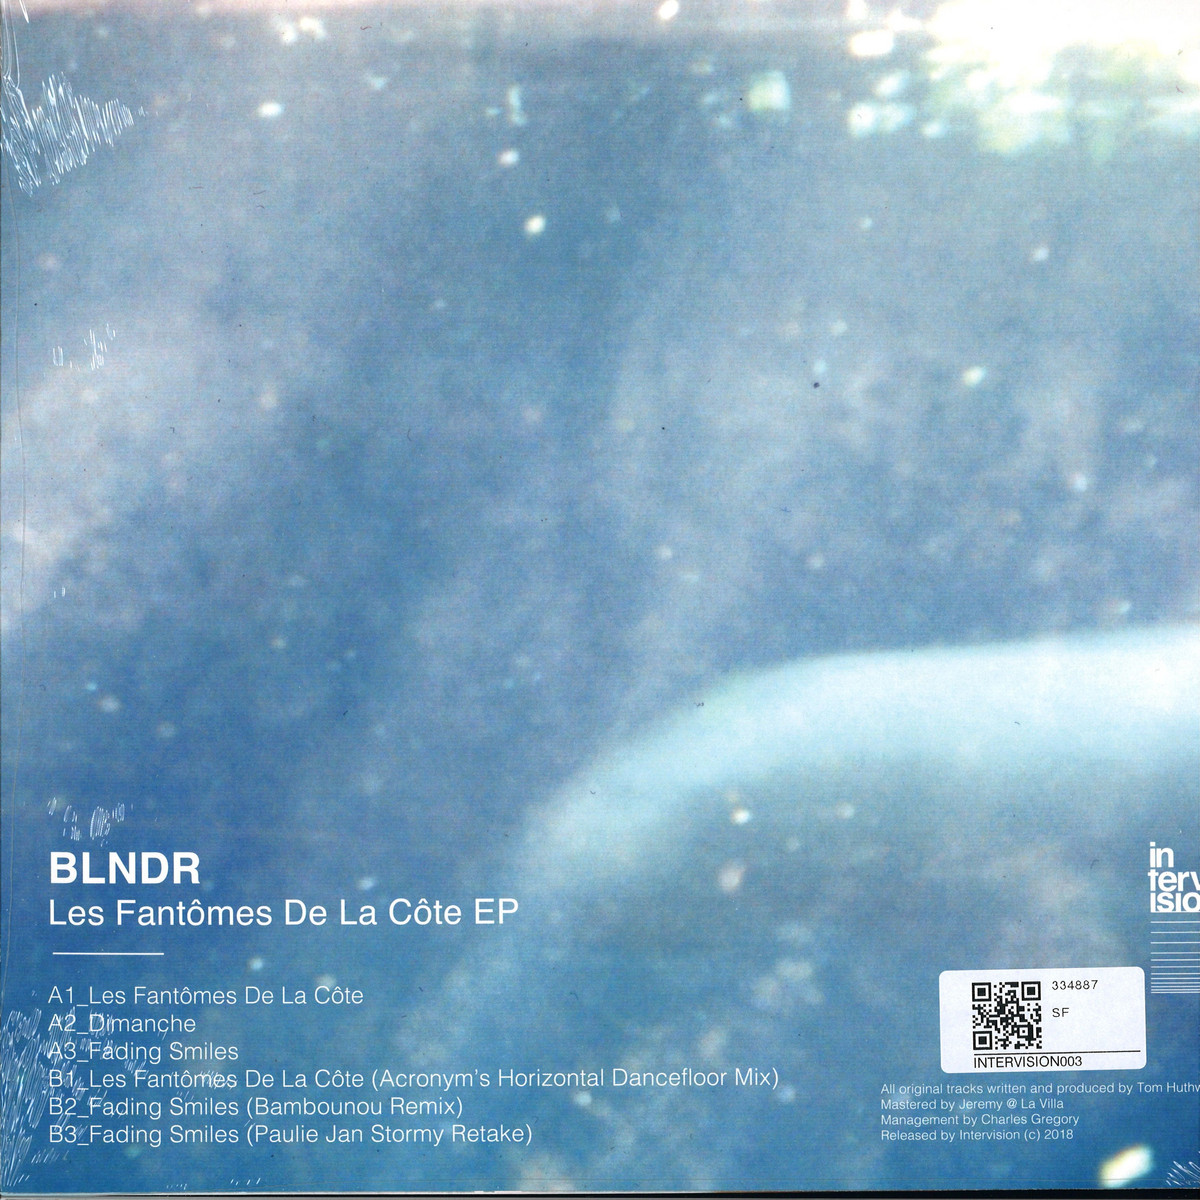 BLNDR - Les Fantômes De La Côte EP / Intervision INTERVISION003 - Vinyl